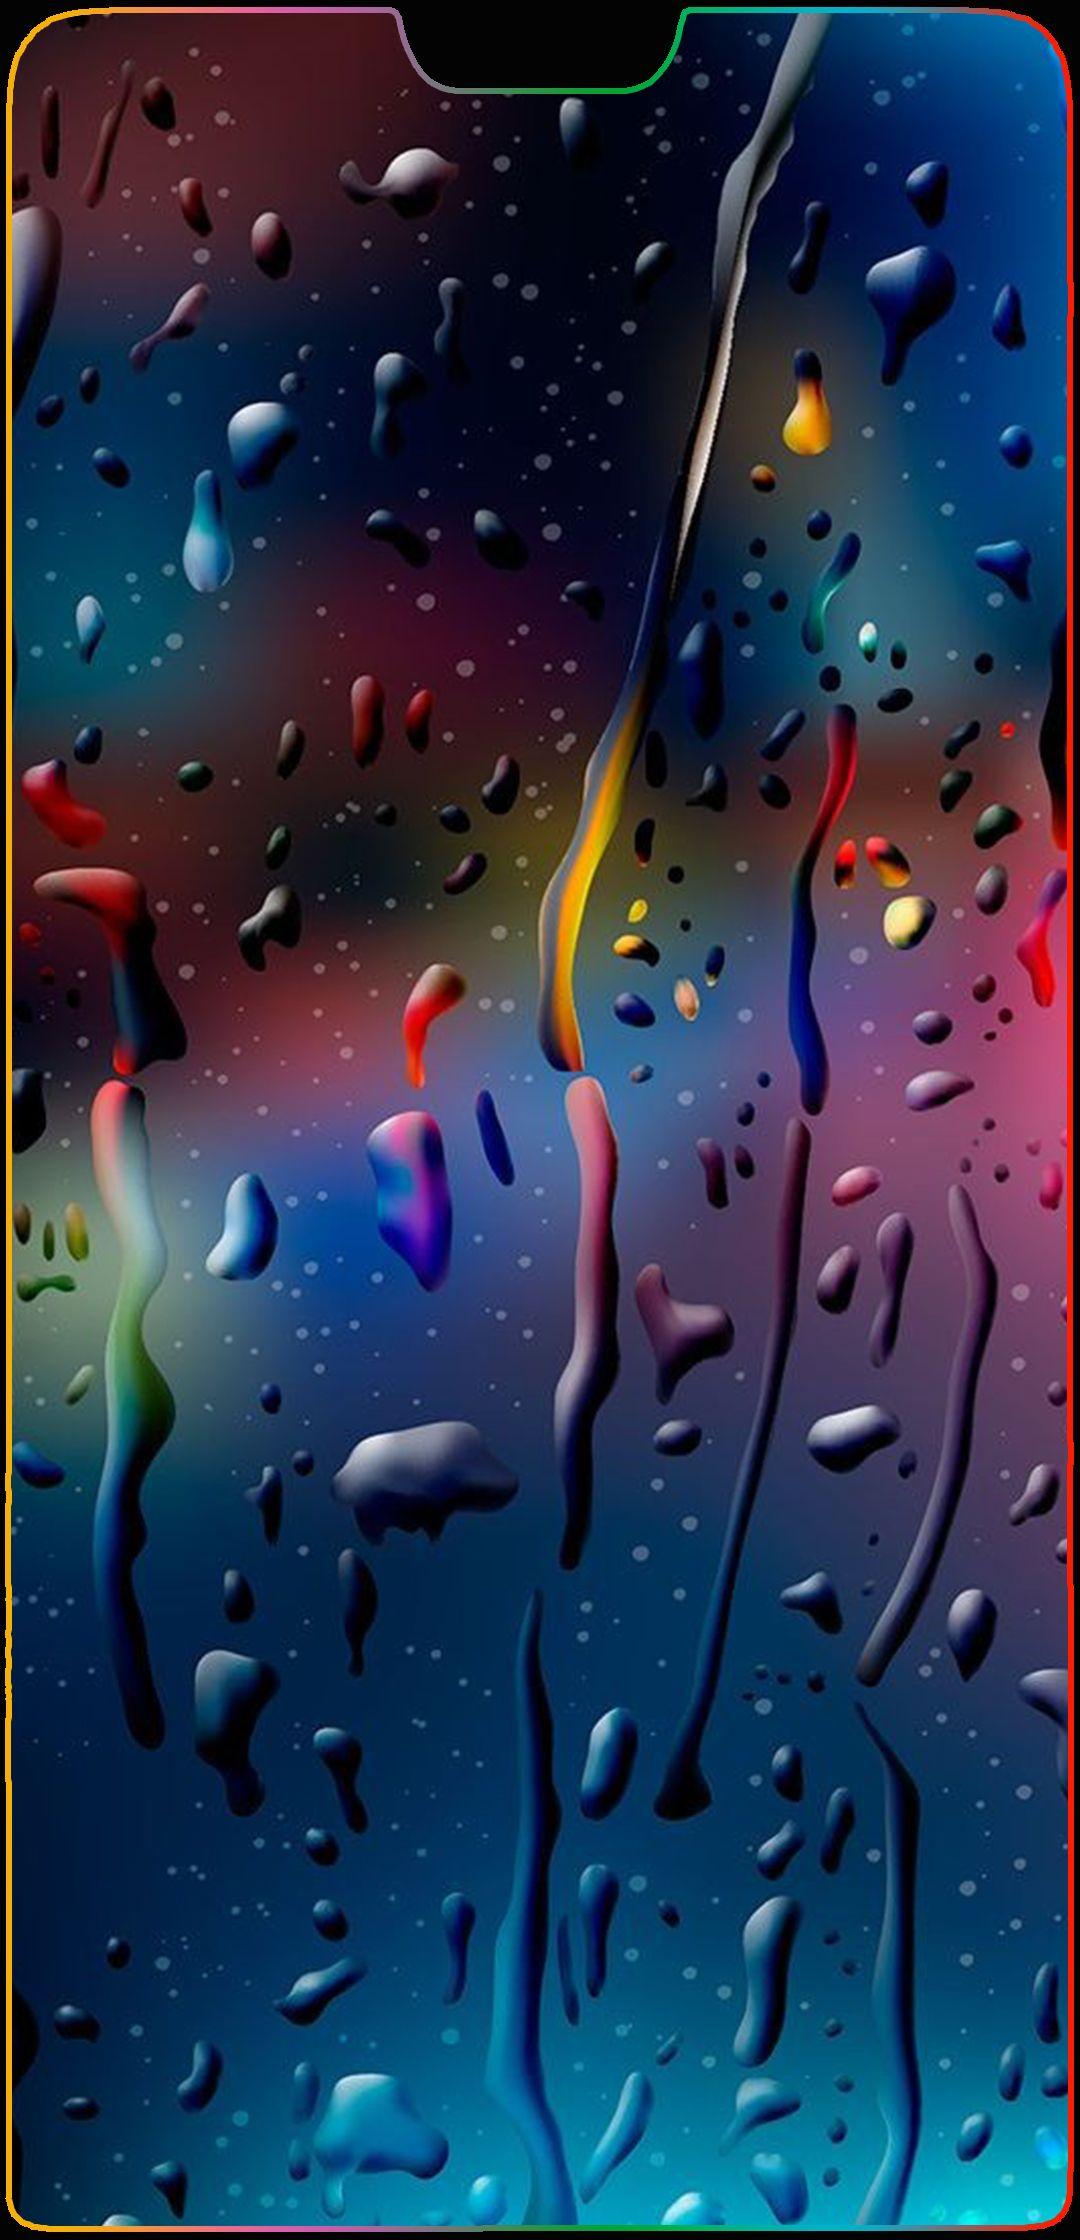 Rain p20 pro. Huawei P20 Notch Wallpaper. iPhone